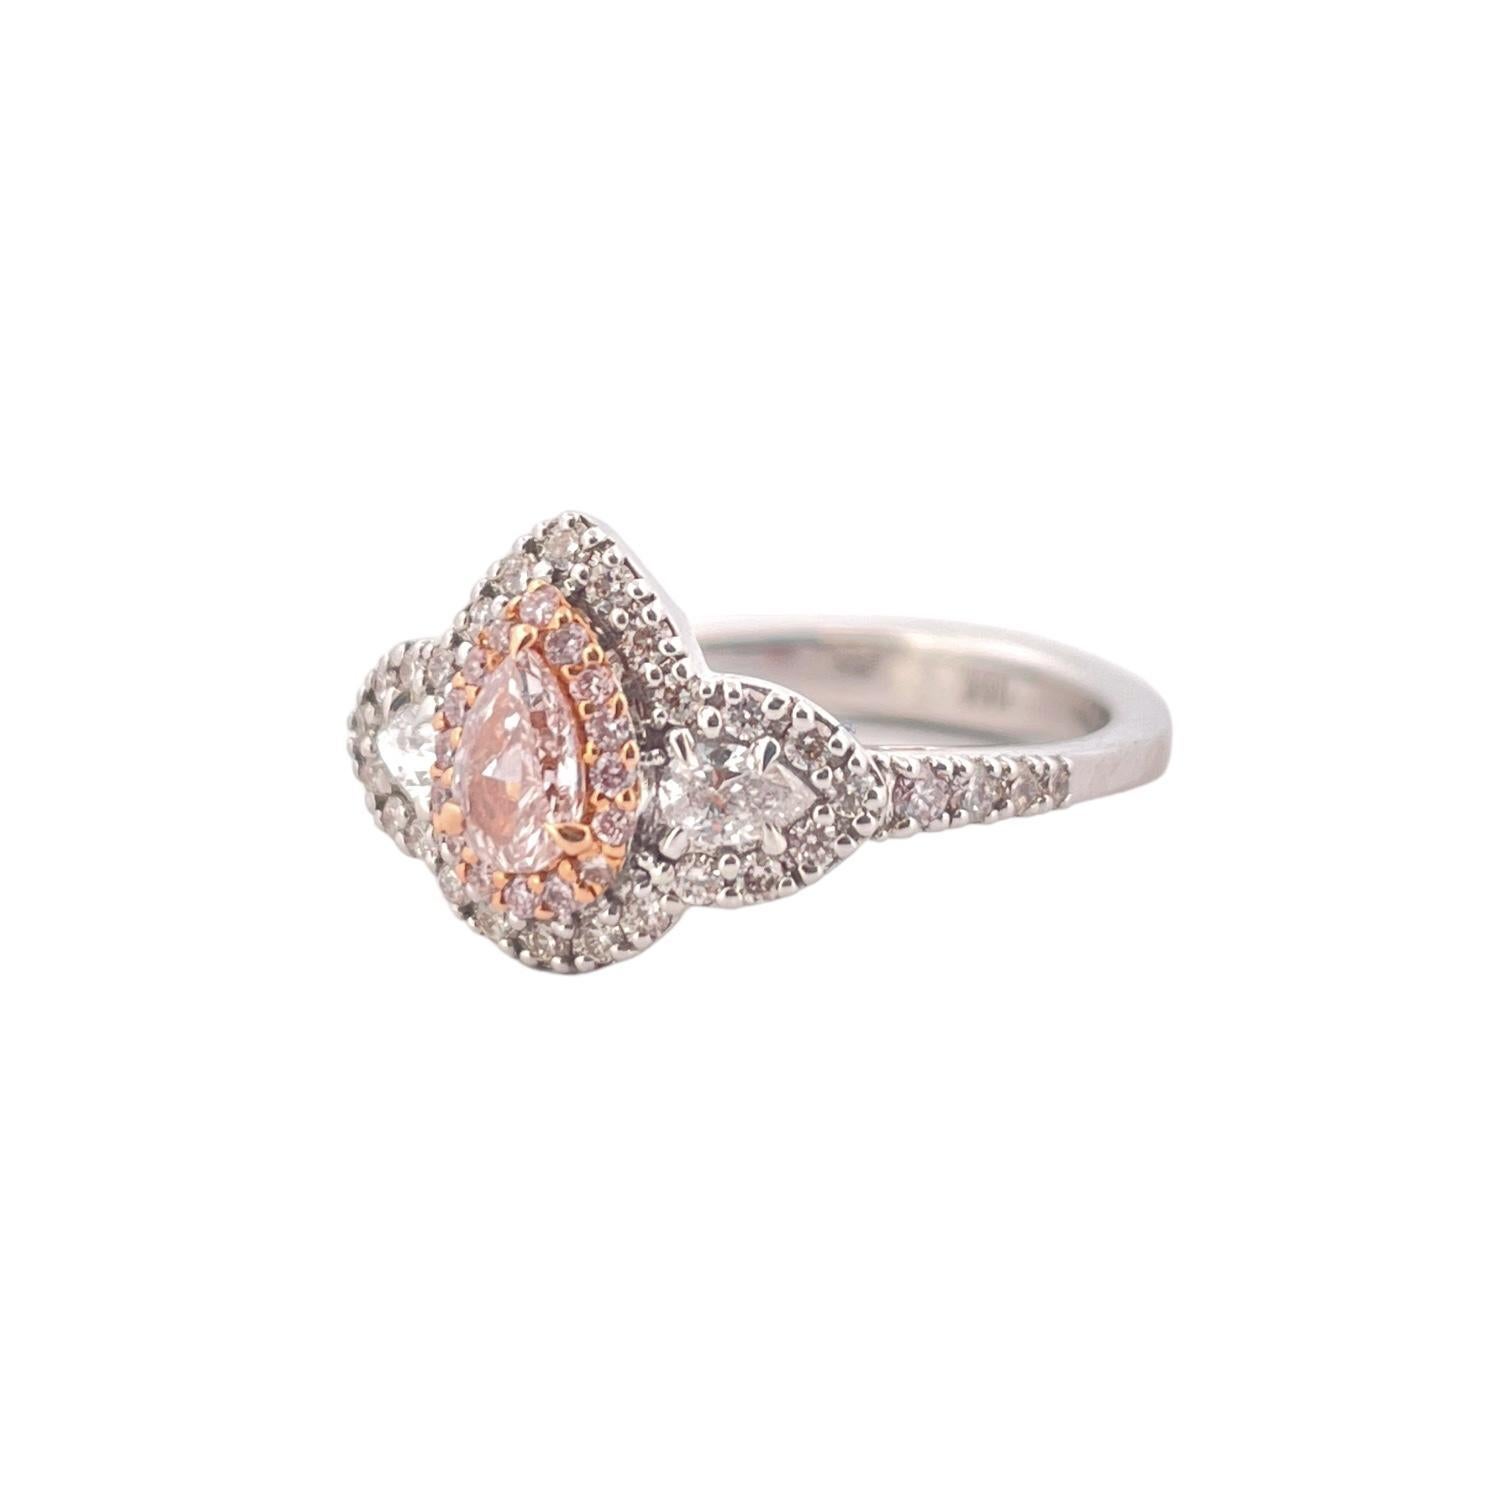 Embrassez l'élégance de notre exceptionnelle bague en diamant rose en forme de poire, méticuleusement réalisée en or blanc lustré 18K. Ce chef-d'œuvre exquis présente en son cœur un diamant radieux de 0,28 carat de couleur naturelle rose,